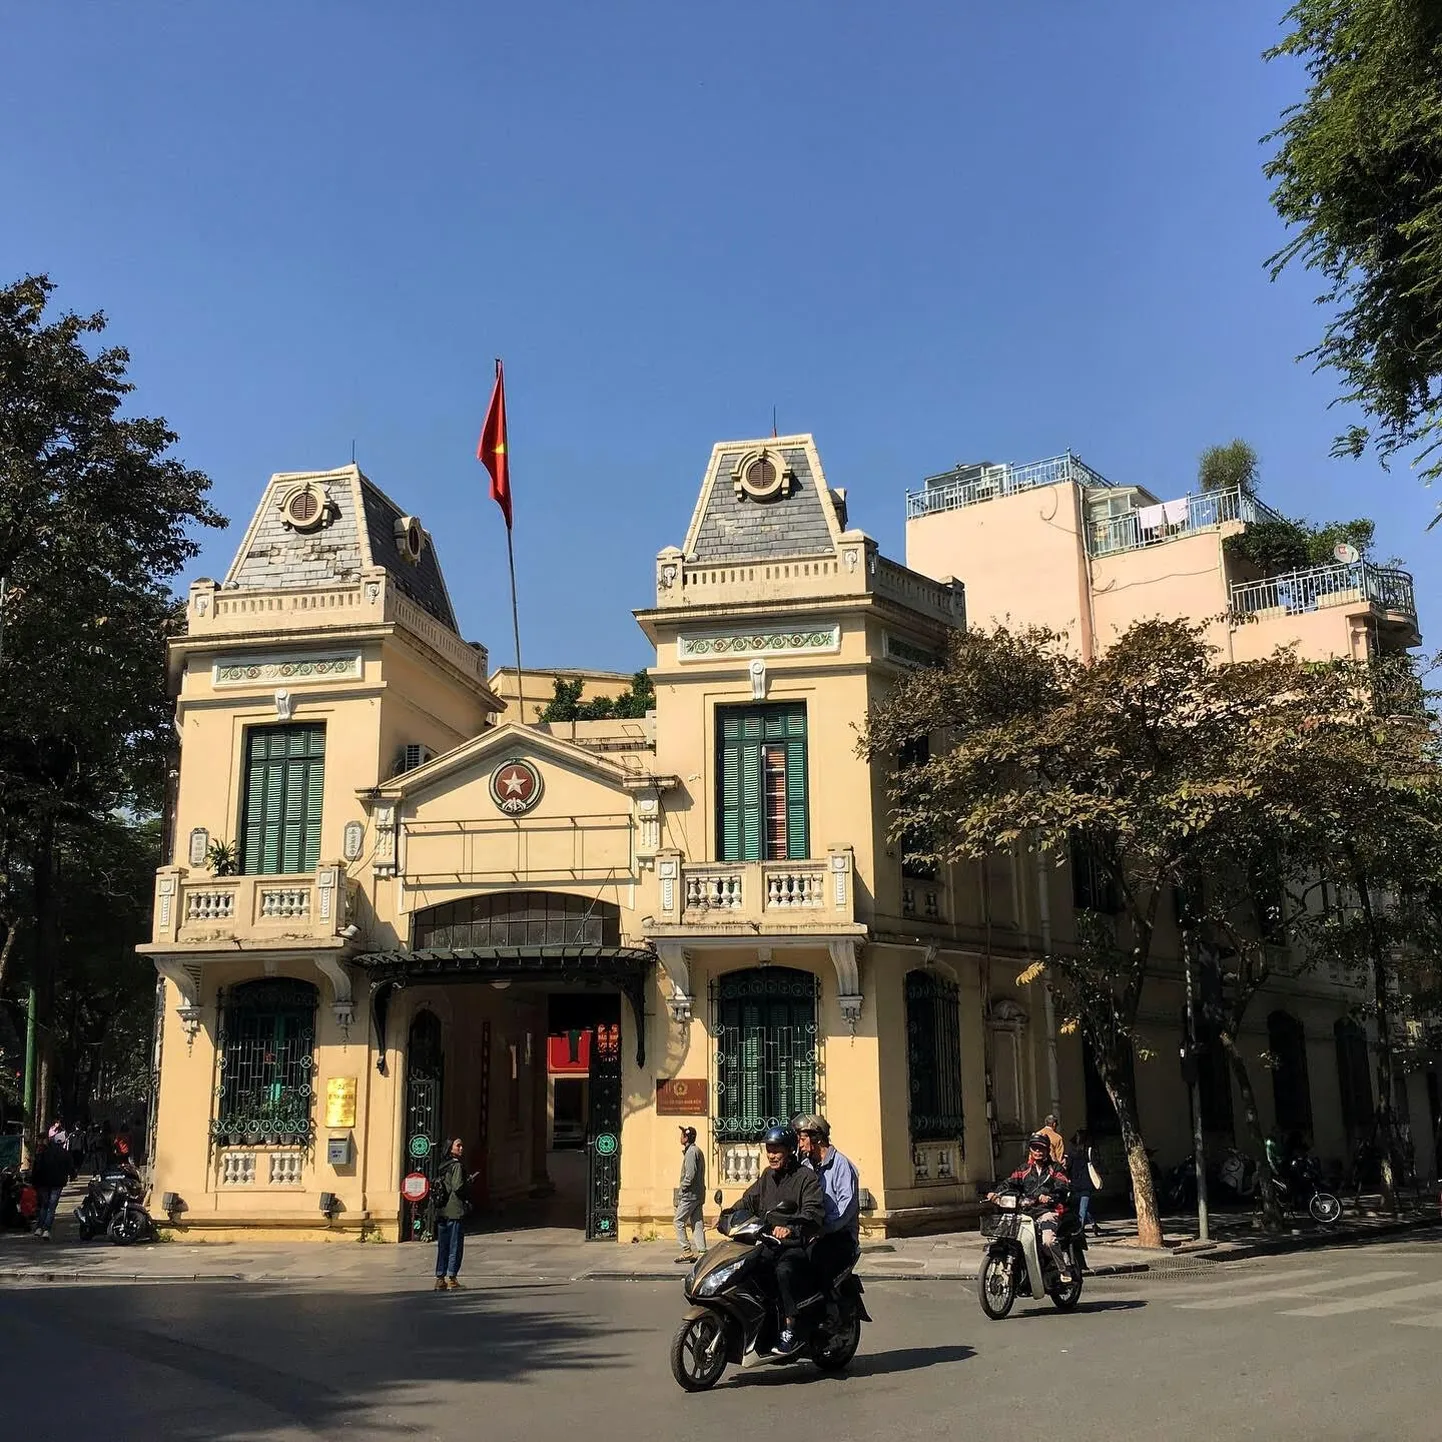 Vietnami linnade arhitektuuris (kuid ka näiteks kokakunstis) paistab kohati välja Prantsusmaa võimu all veedetud aeg.